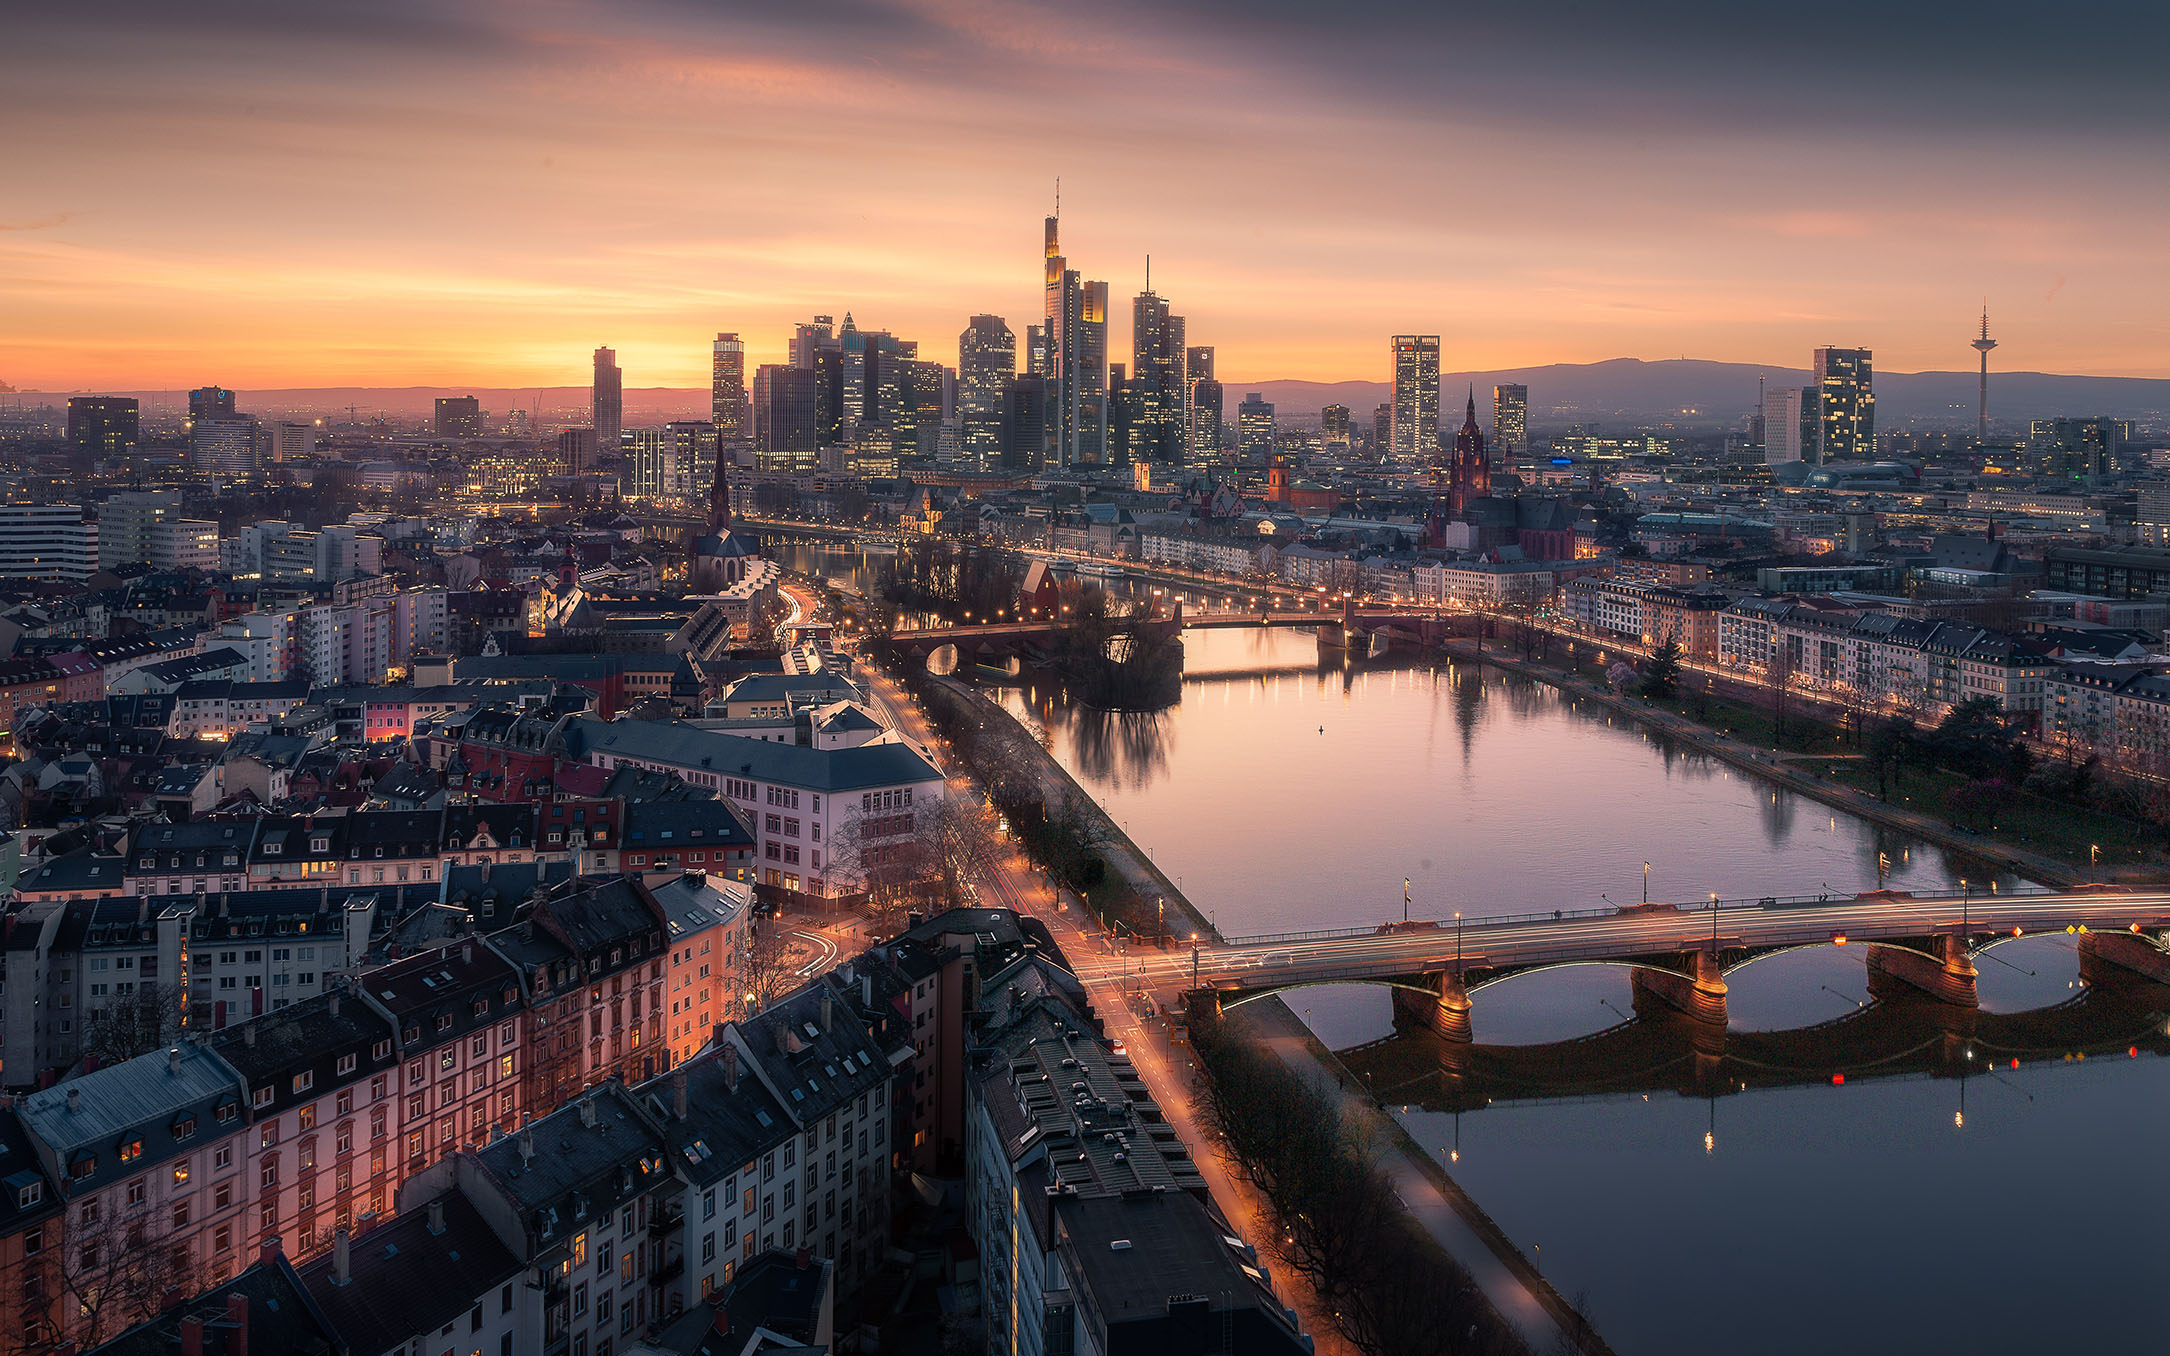 Almanya Hessen eyaletinin en büyük şehri olan Frankfurt,  ülkenin de en kalabalık 5.şehridir